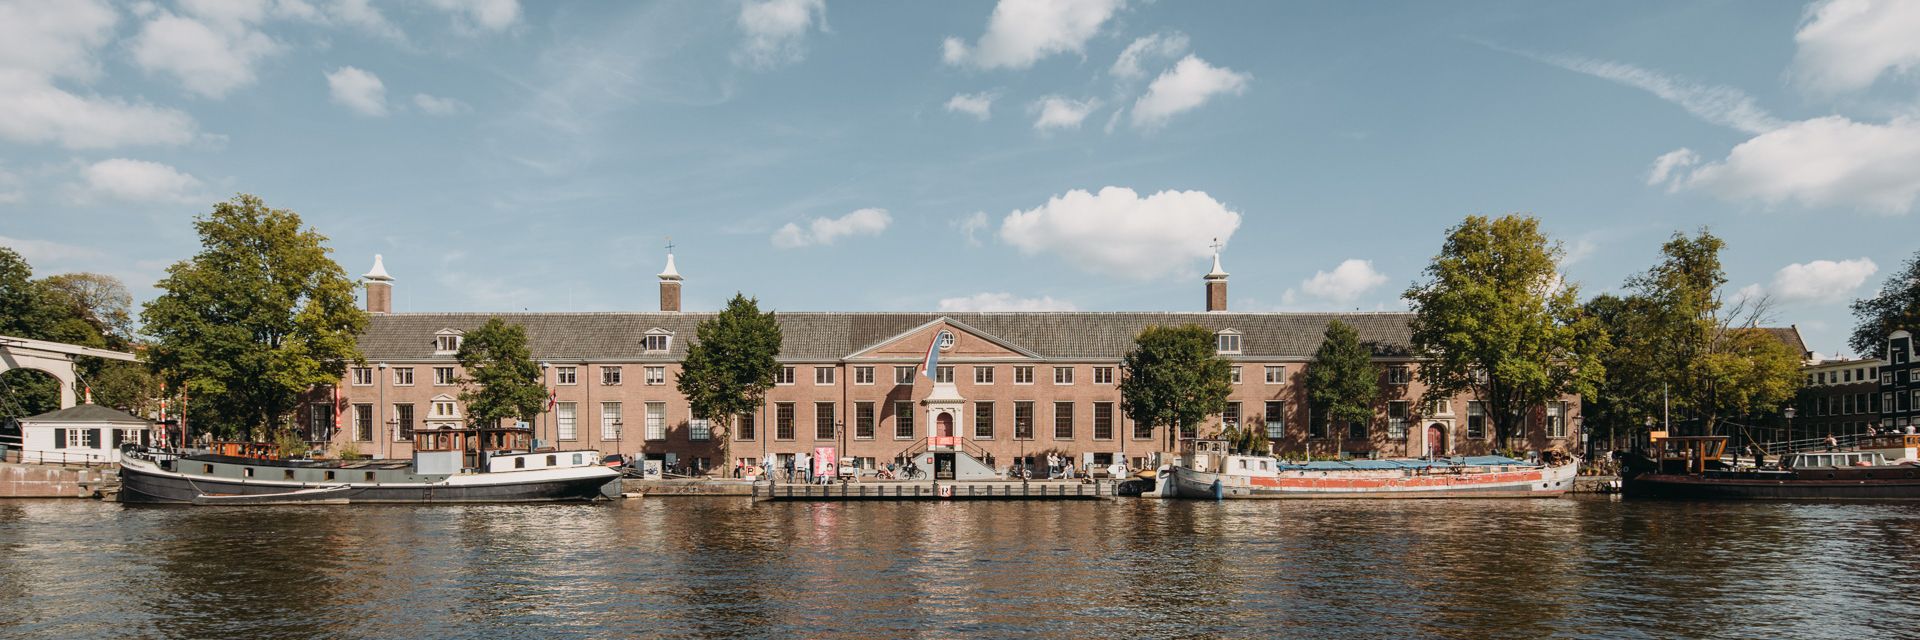 Ermita de Ámsterdam